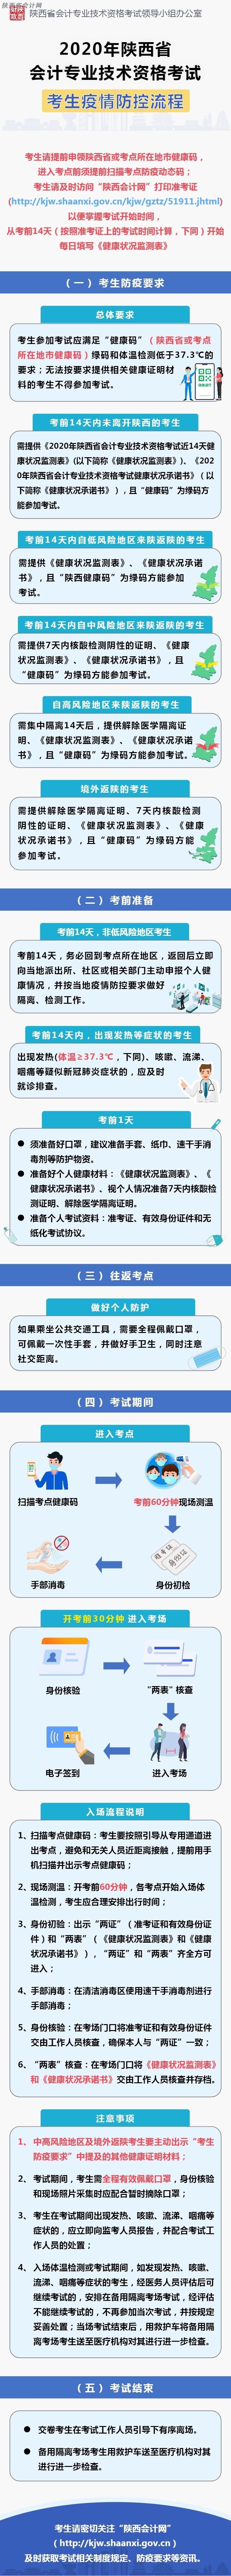 陕西省2020年初级会计职称考试考生防疫要求